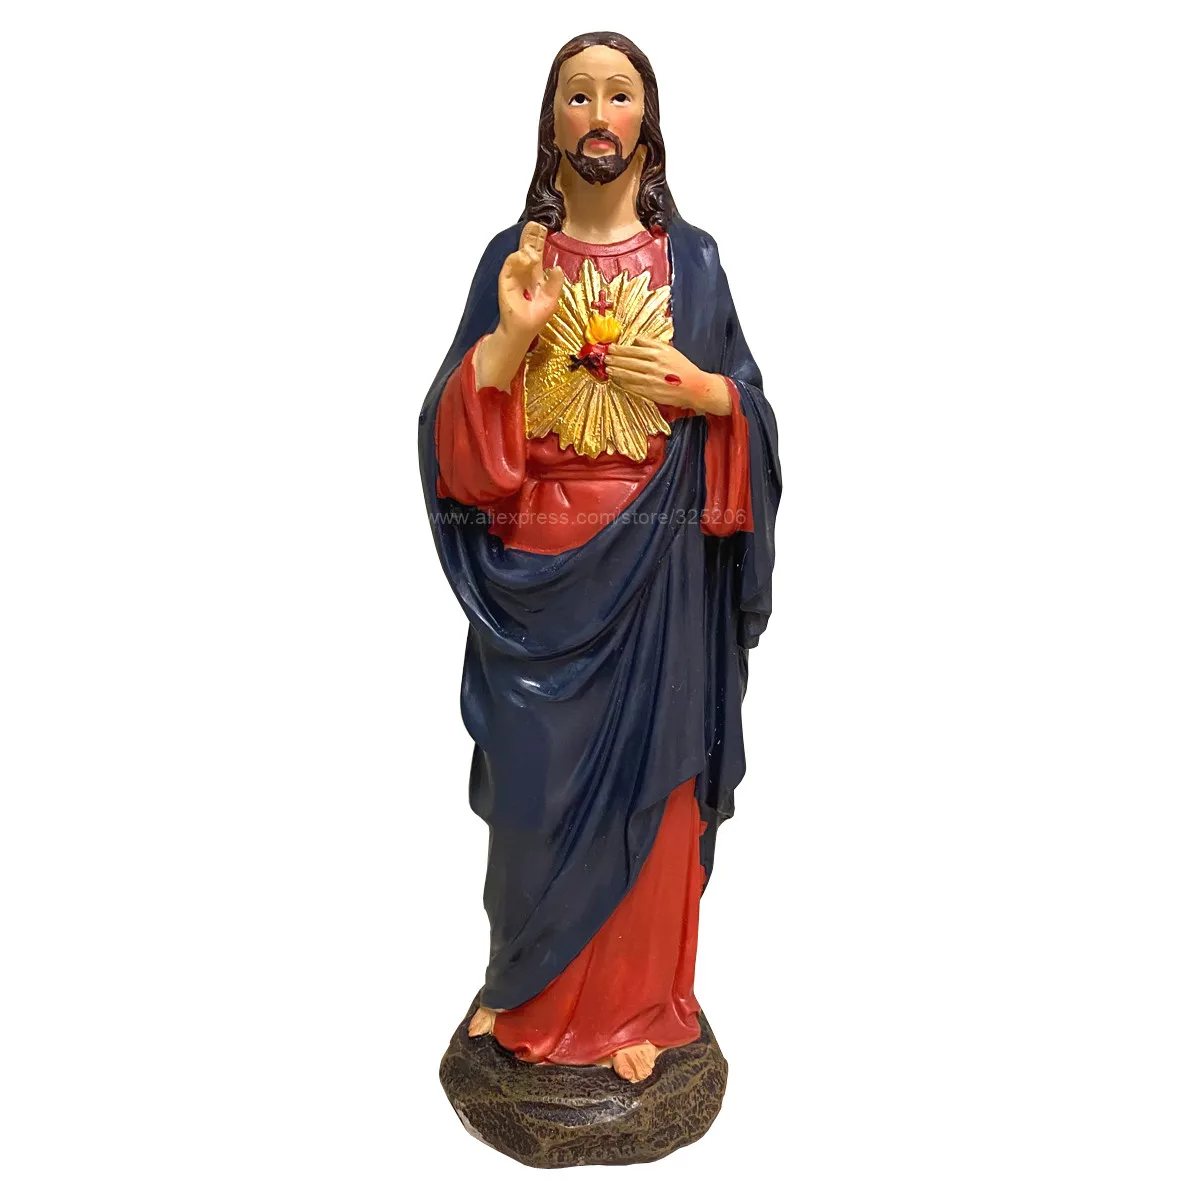 

Статуэтка Священная скульптура Иисуса из чистого сердца, статуэтка религиозной католической церкви, сувениры, подарок, 7,8 дюйма, 20 см, новин...